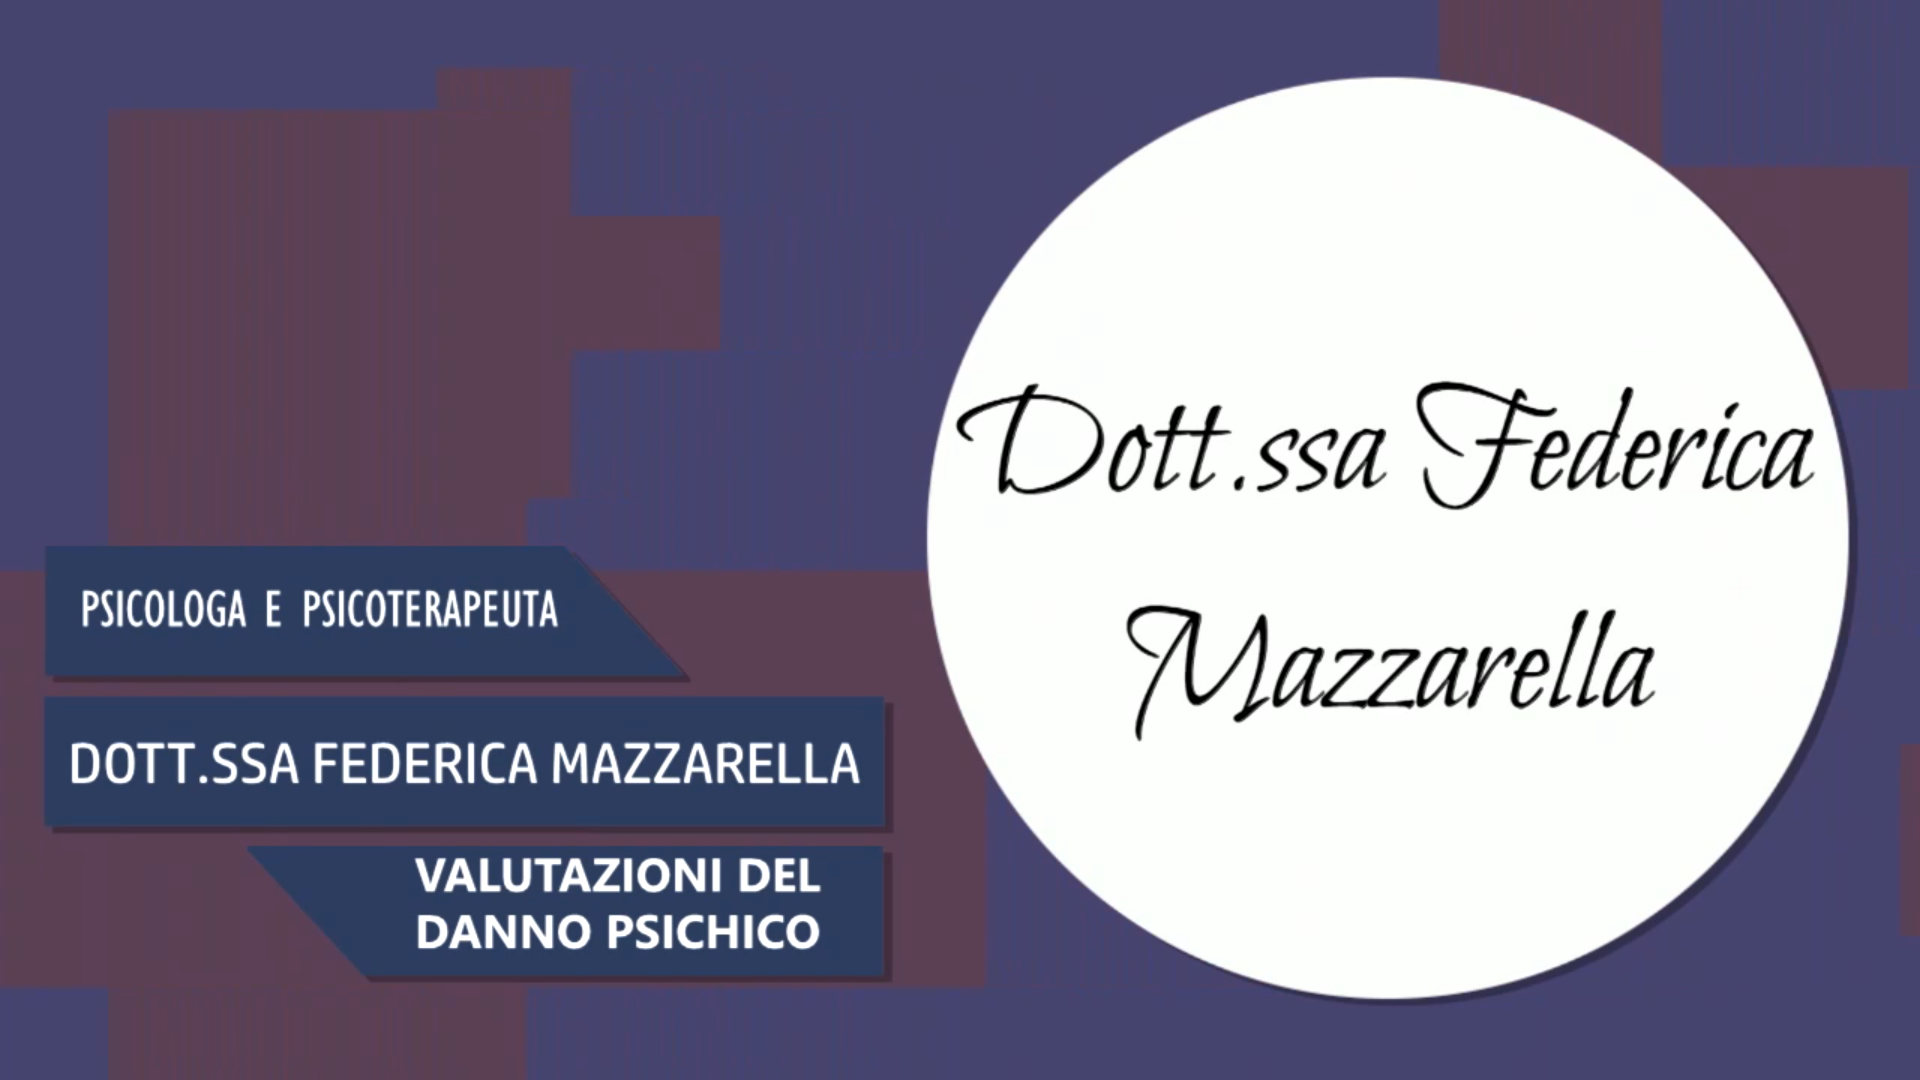 Intervista alla Dott.ssa Federica Mazzarella – Valutazioni del danno psichico